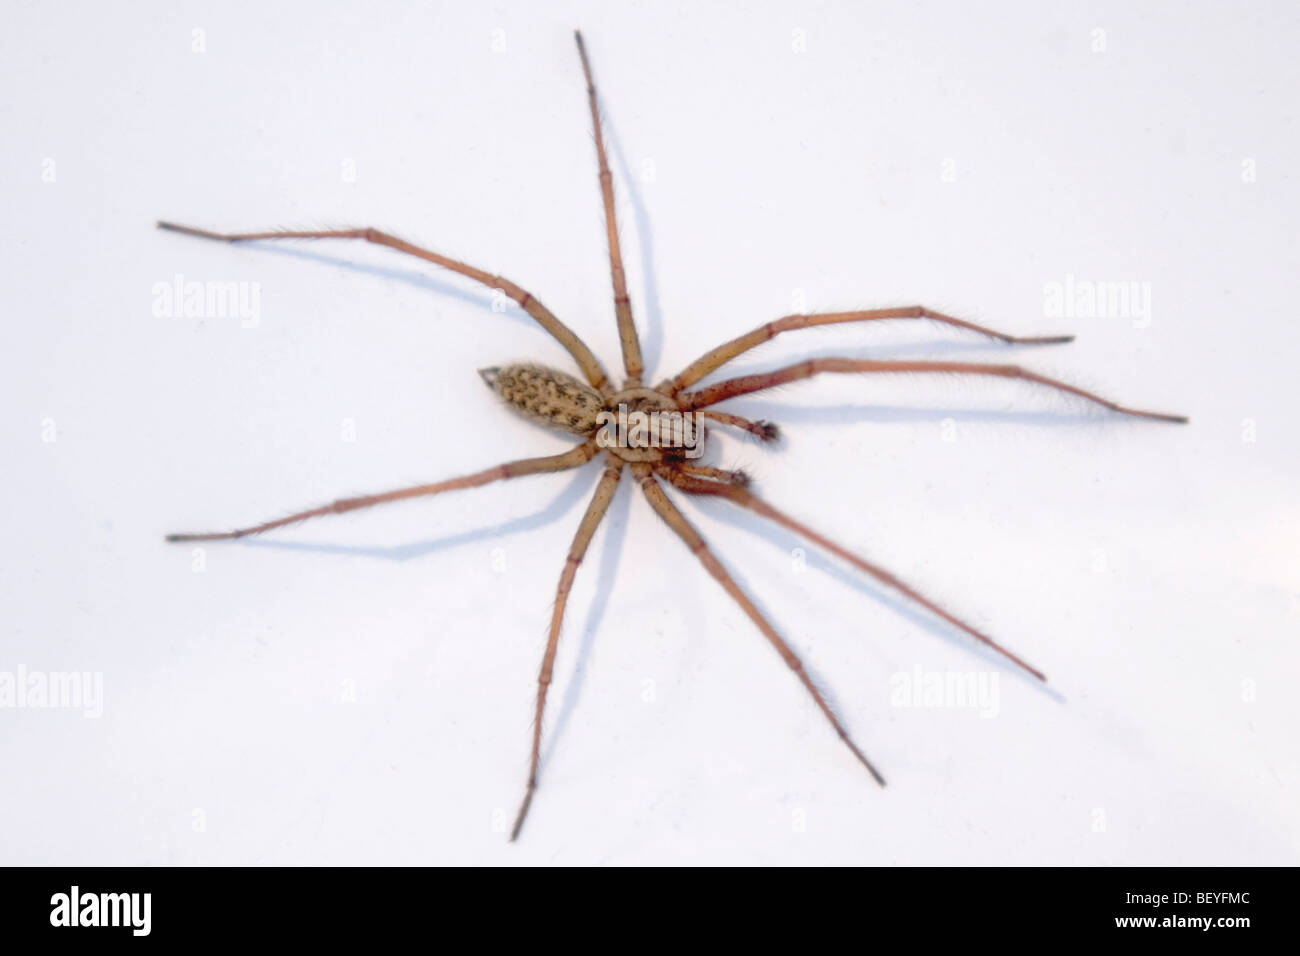 England , London , Common European Giant House Spider or Tegenaria Gigantea AKA Domestica Stock Photo